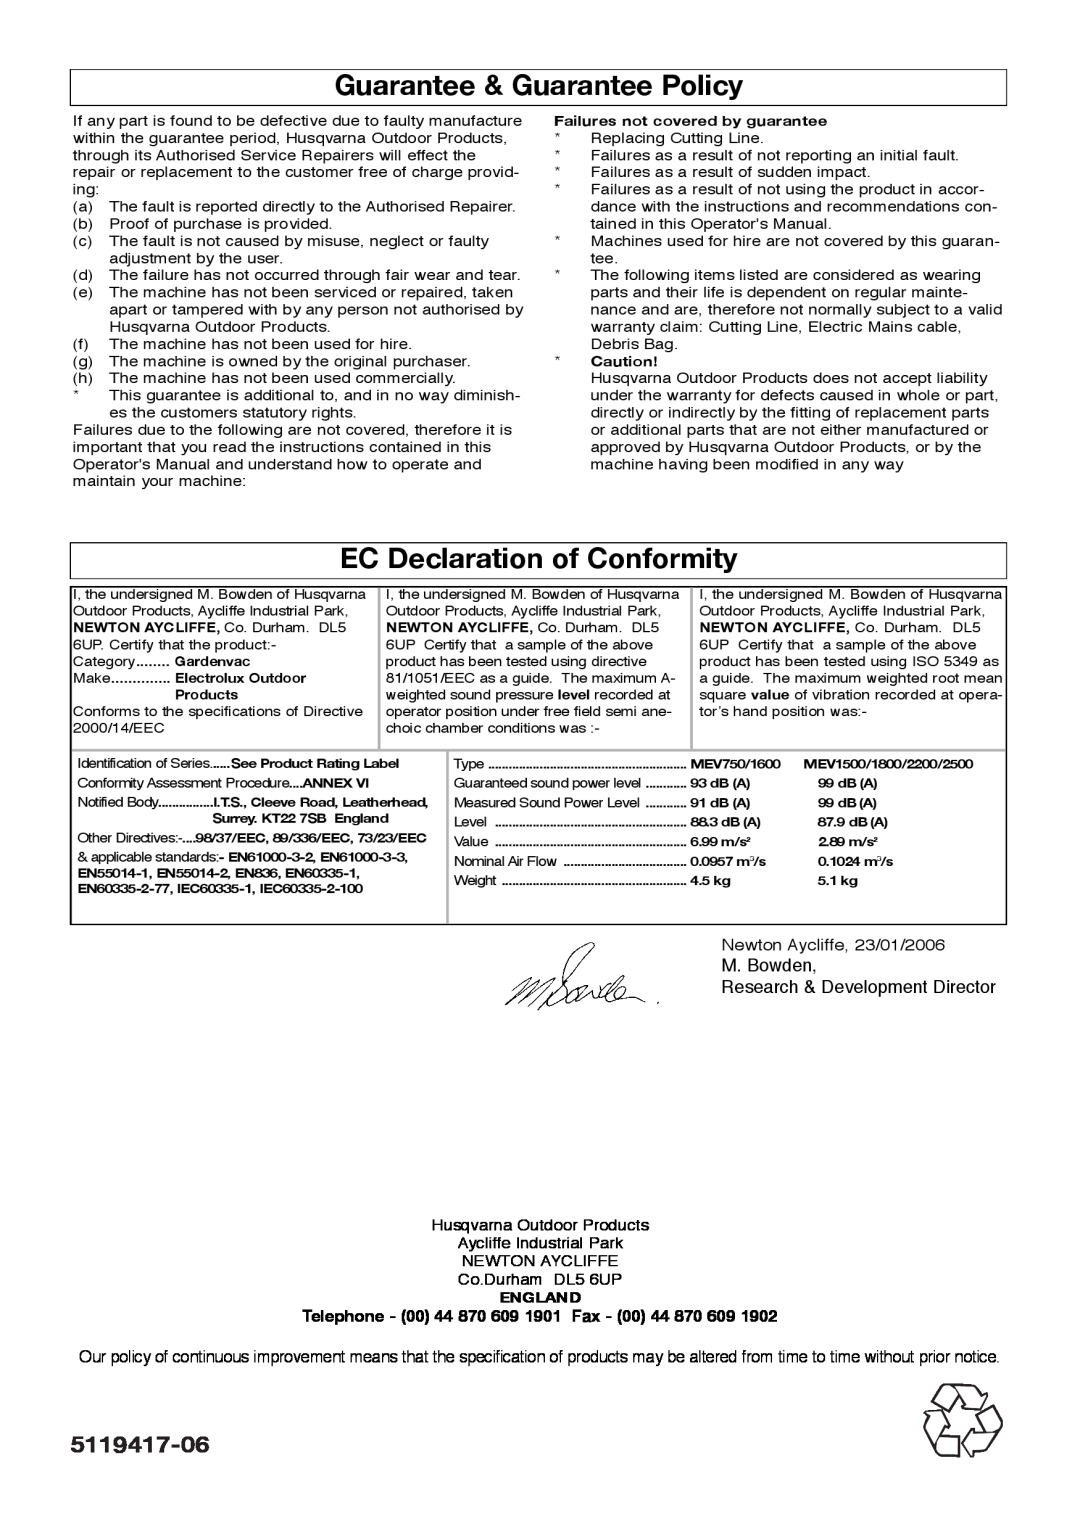 Flymo Garden Vac manual Guarantee & Guarantee Policy, EC Declaration of Conformity, 5119417-06, England 